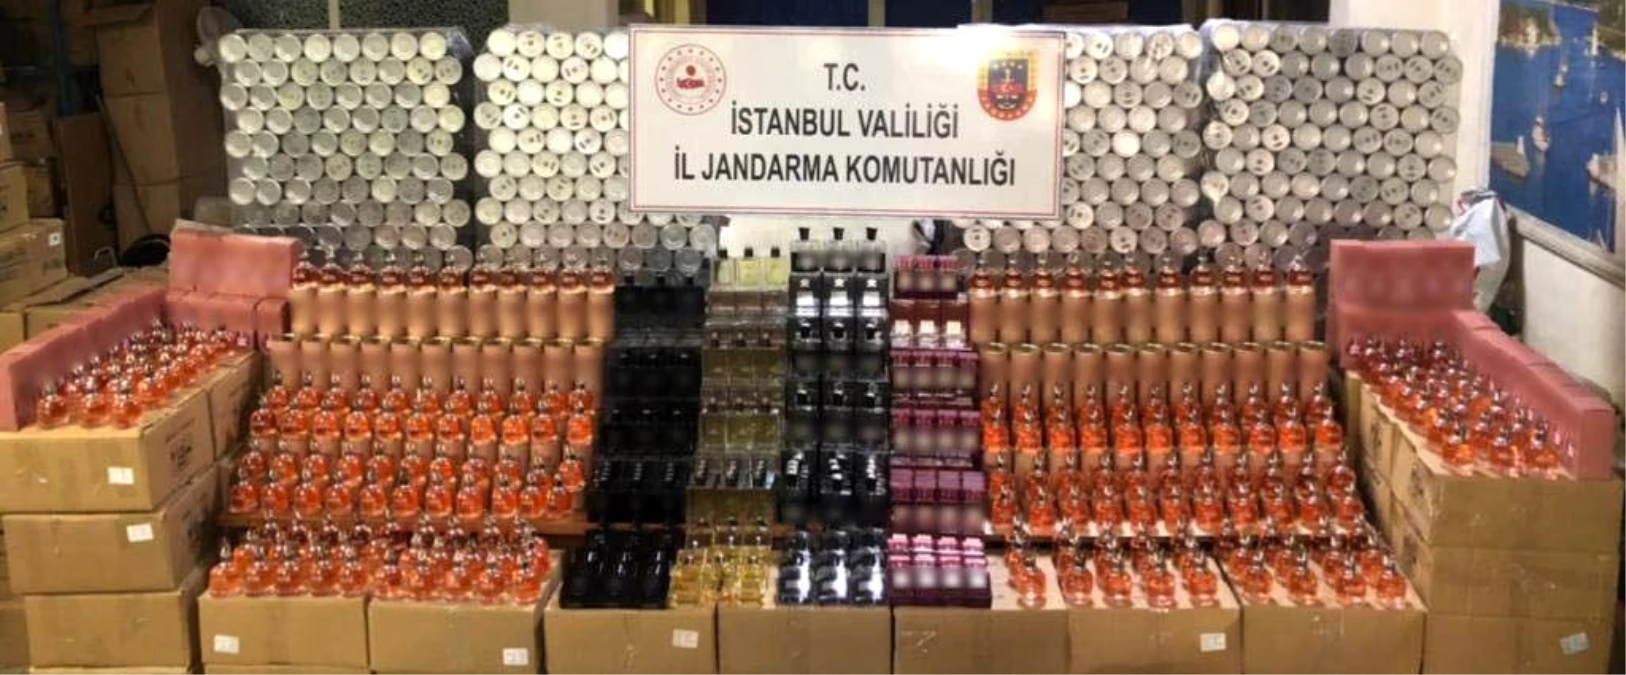 İstanbul'da sahte parfüm operasyonu: 25 bin şişe